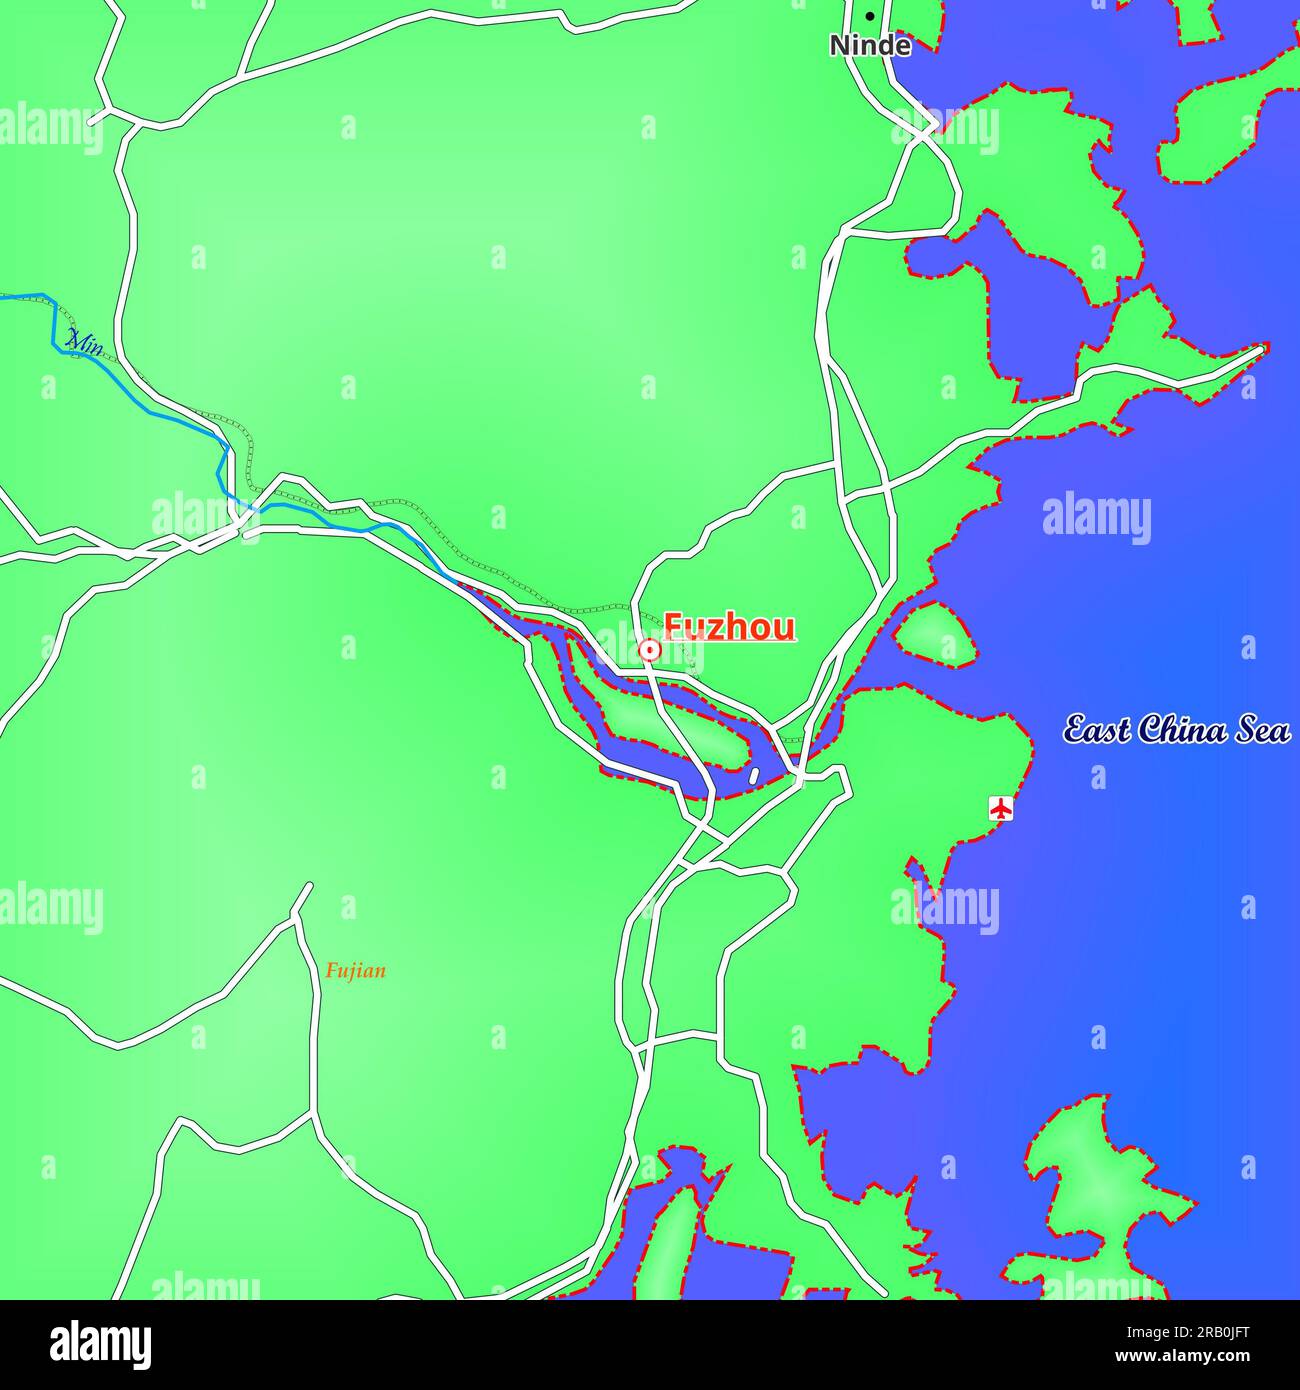 Ilustration map of Fuzhou City in China Stock Photo